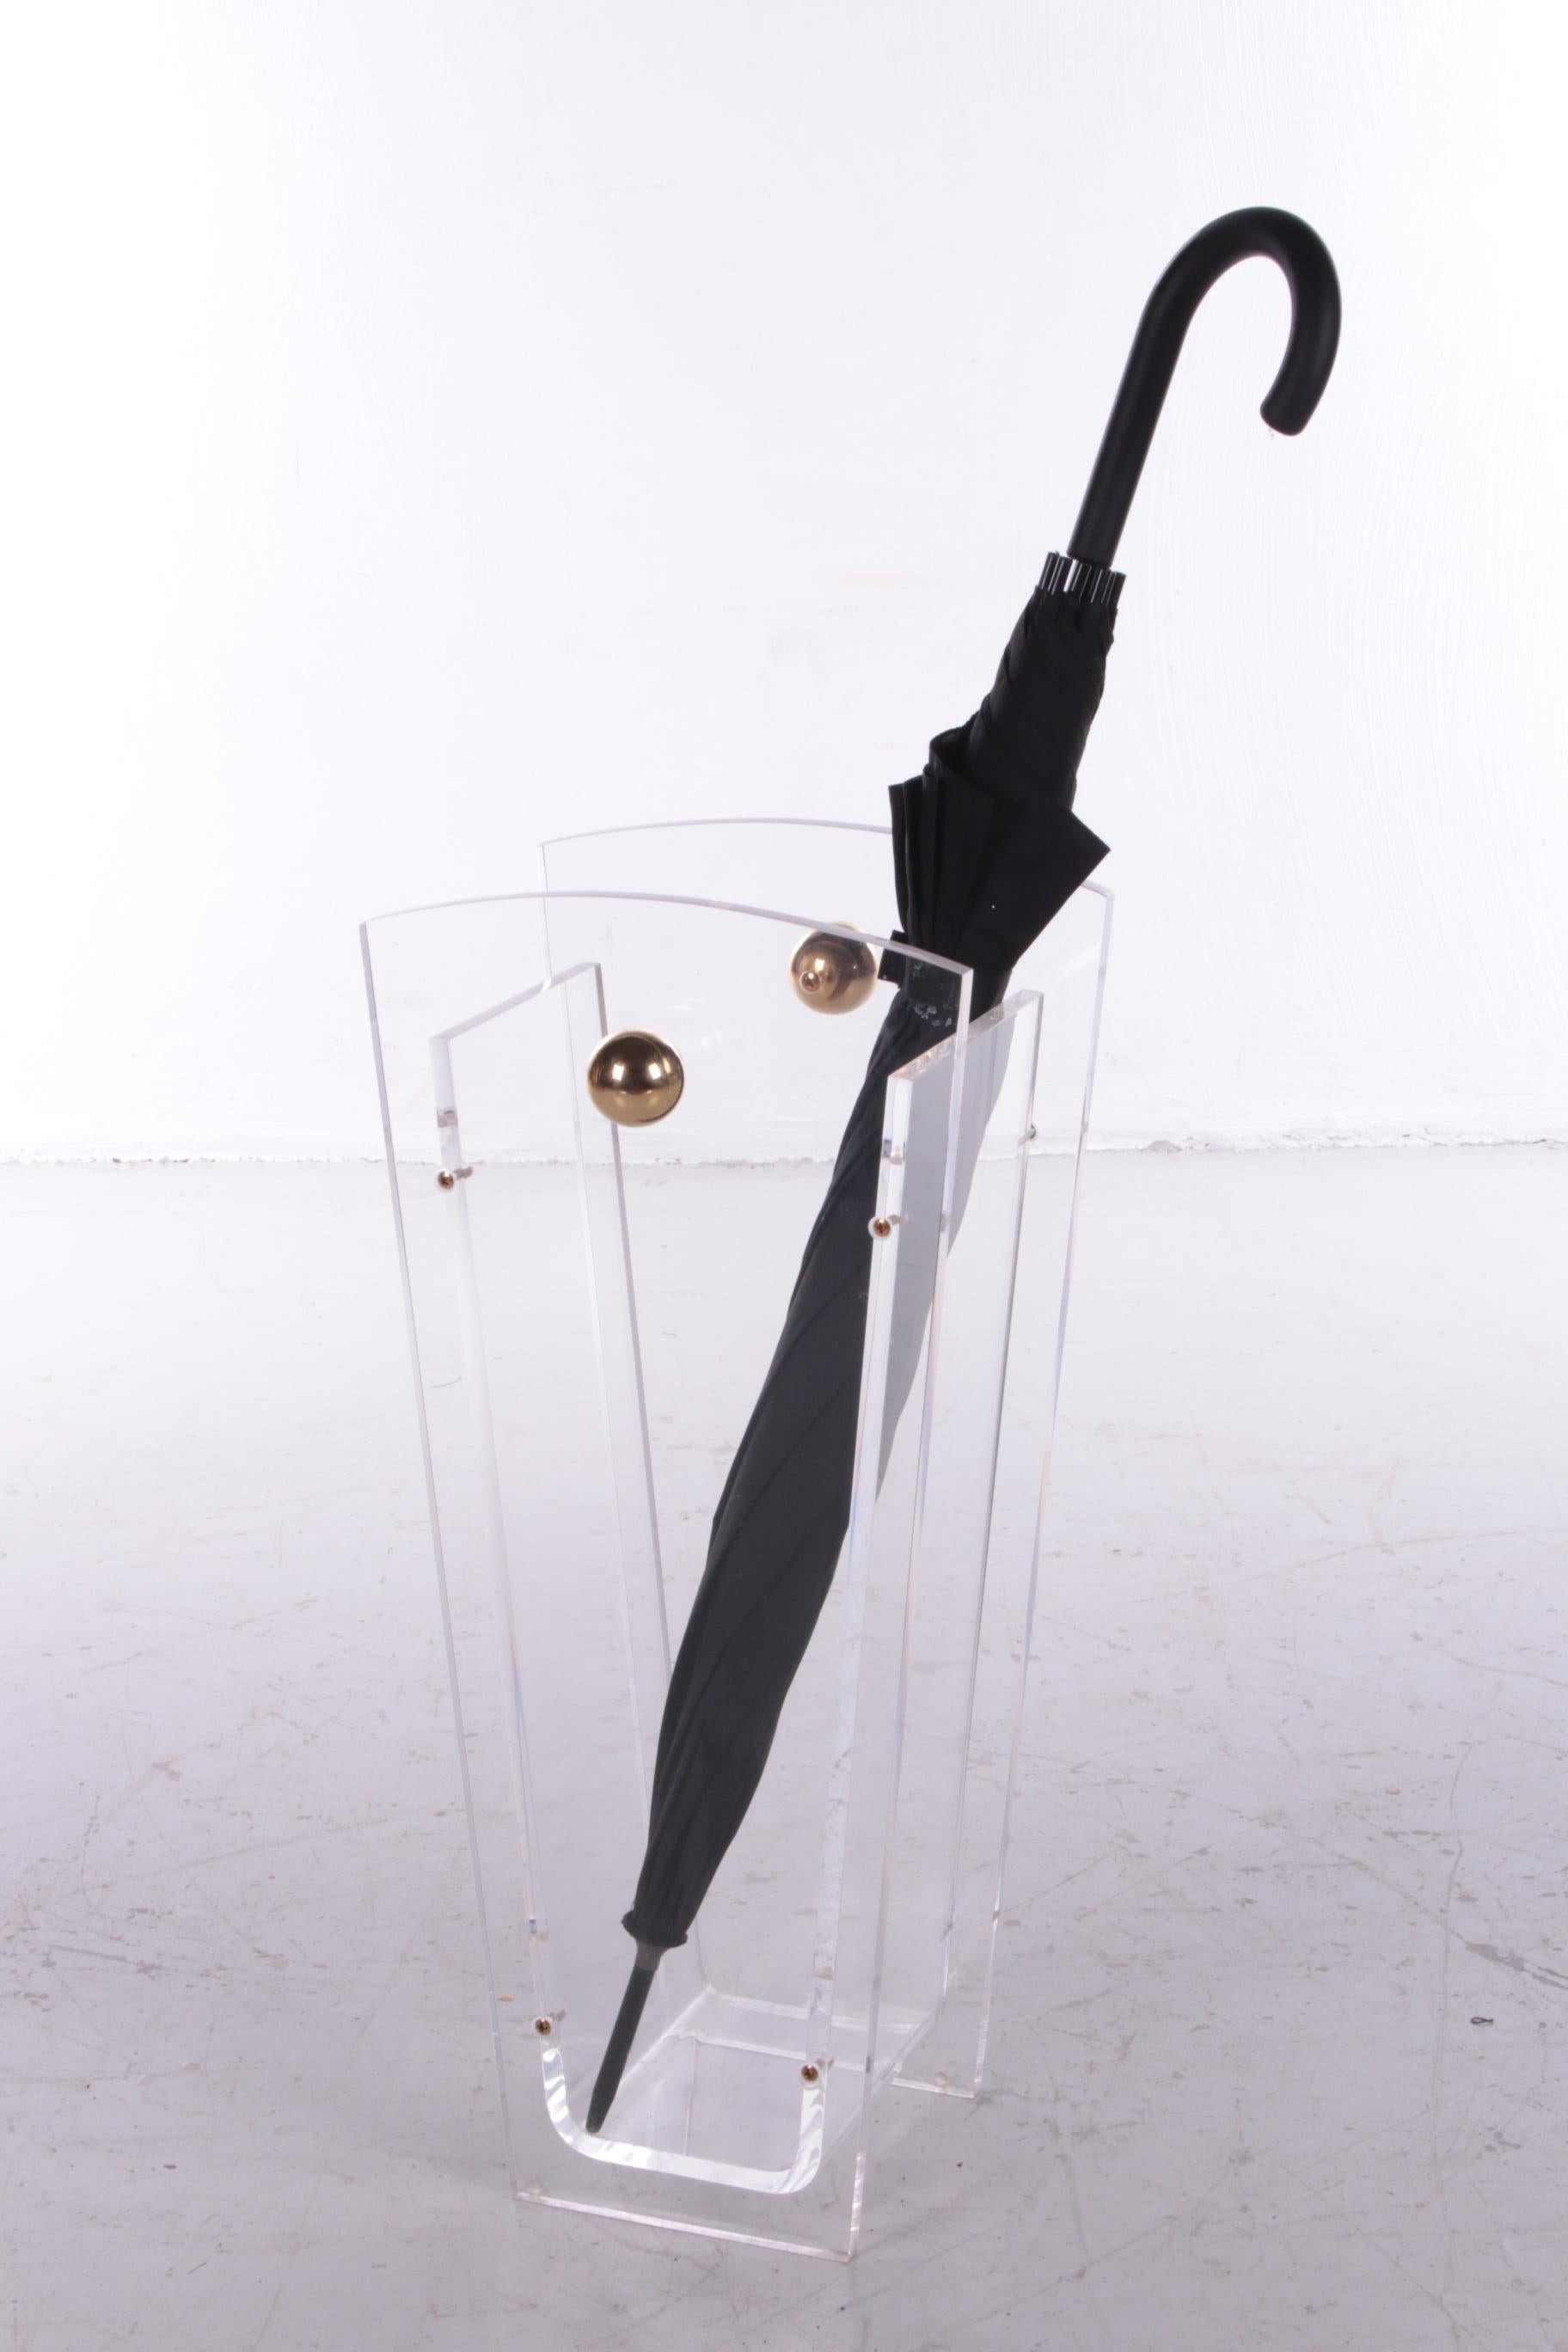 Schirmständer aus Plexiglas Charles Hollis Jones mit Messingakzenten, 1970


Schirmständer aus Plexiglas mit Messingknöpfen.

Entwurf von Charles Hollis Jones.

Dieser Schirmständer strahlt ein schönes Design aus und ist modern und